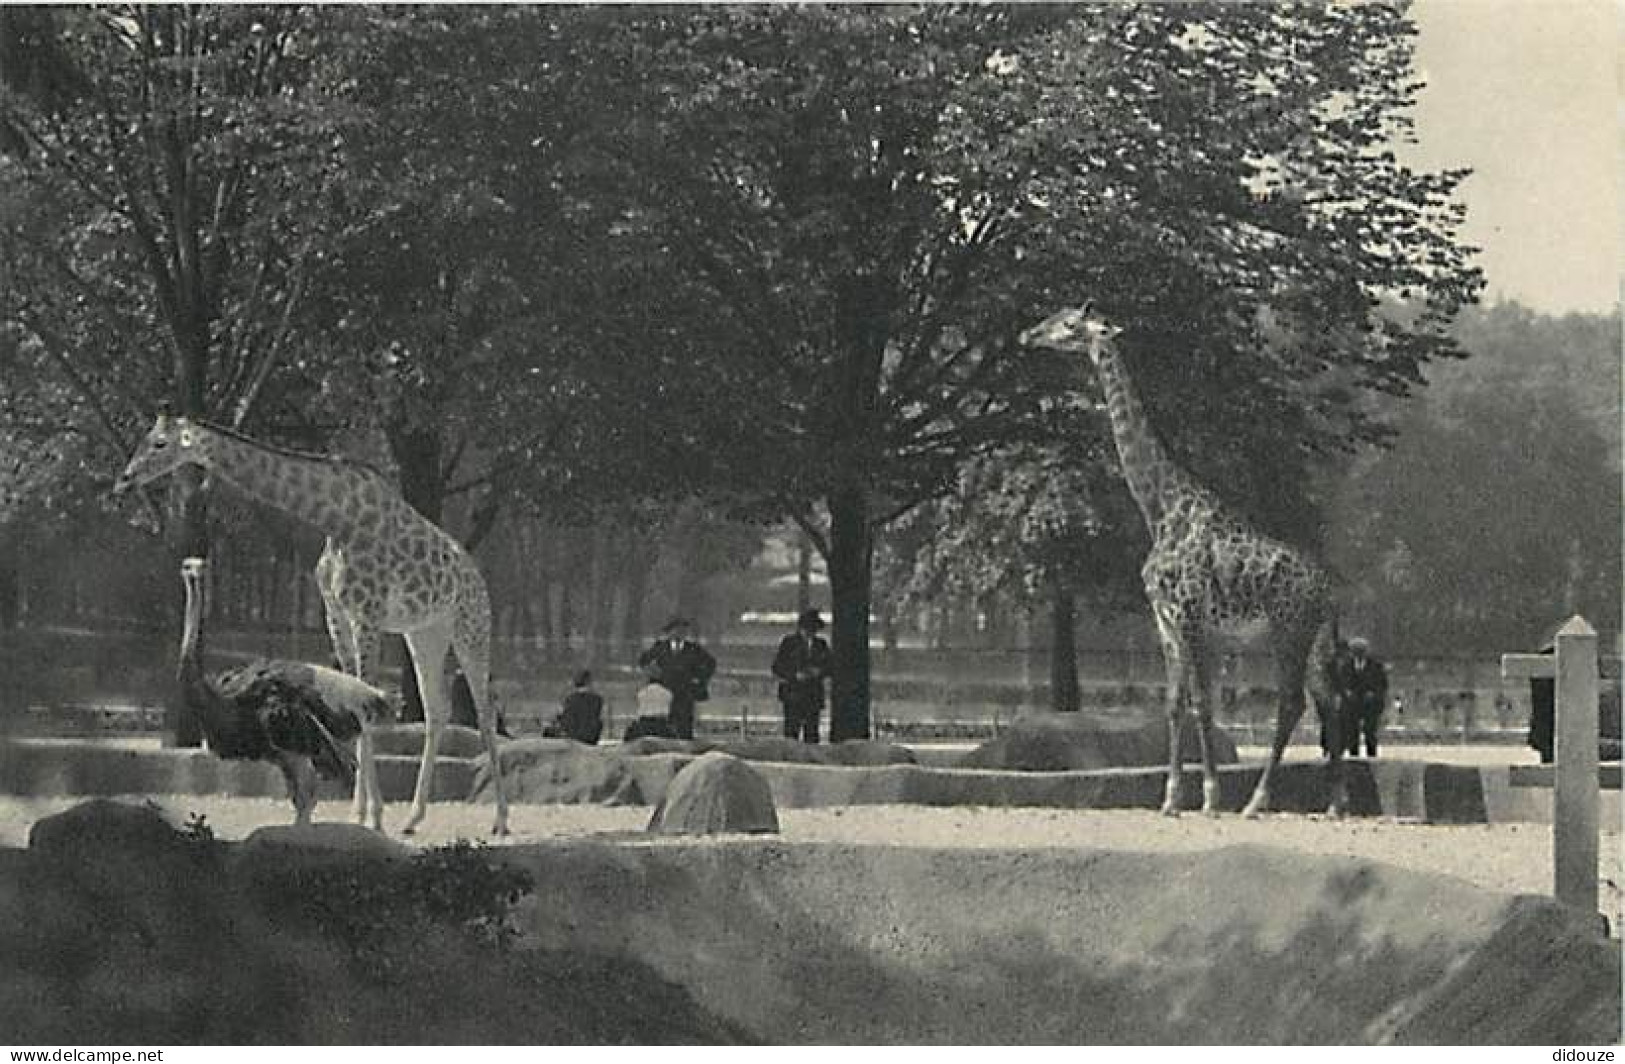 Animaux - Girafes - Parc Zoologique Du Bois De Vincennes - Les Girafes Sur Leur Plateau - Carte Neuve - CPM - Voir Scans - Giraffes